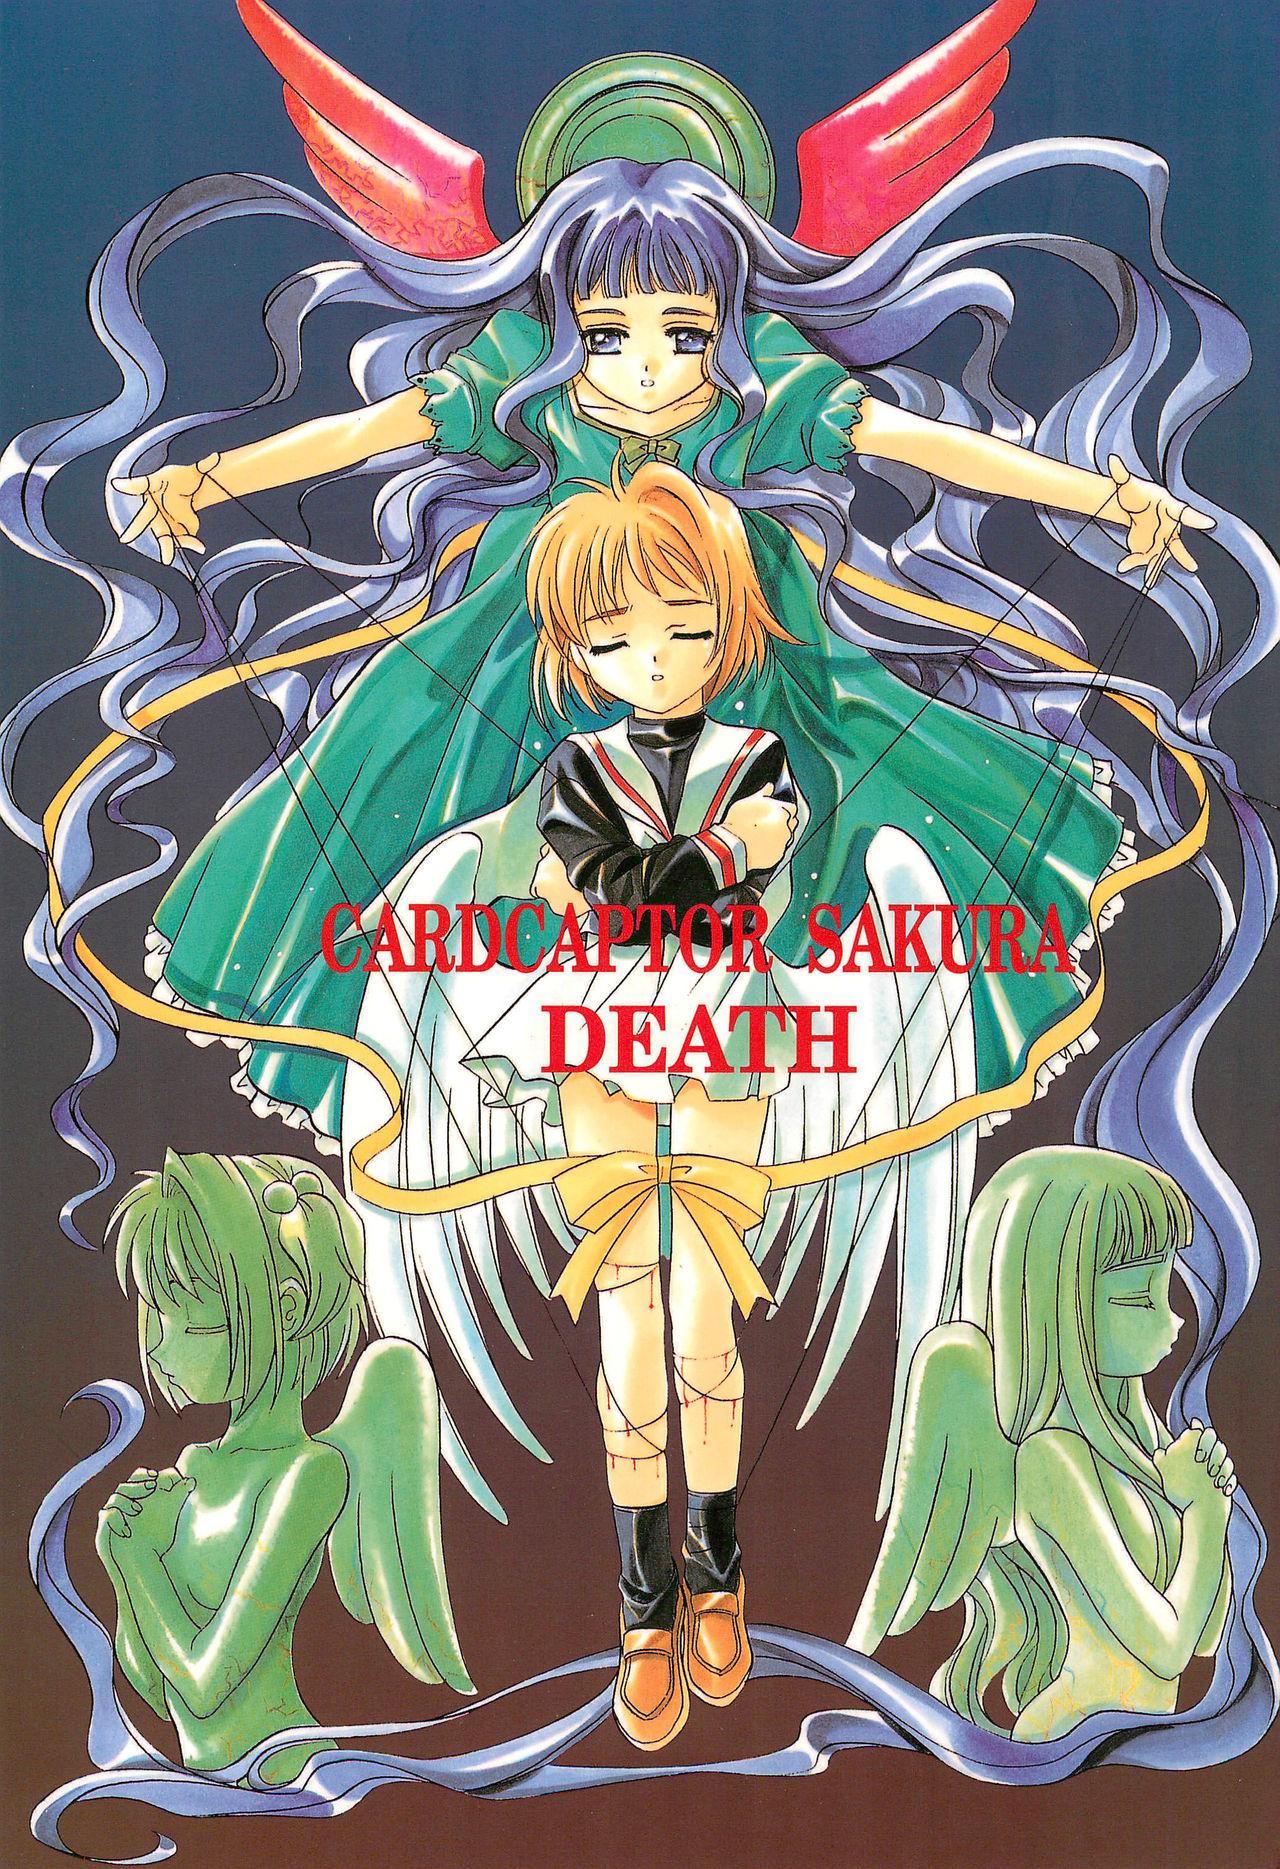 Amazing CARDCAPTOR SAKURA DEATH - Cardcaptor sakura Horny Slut - Page 1